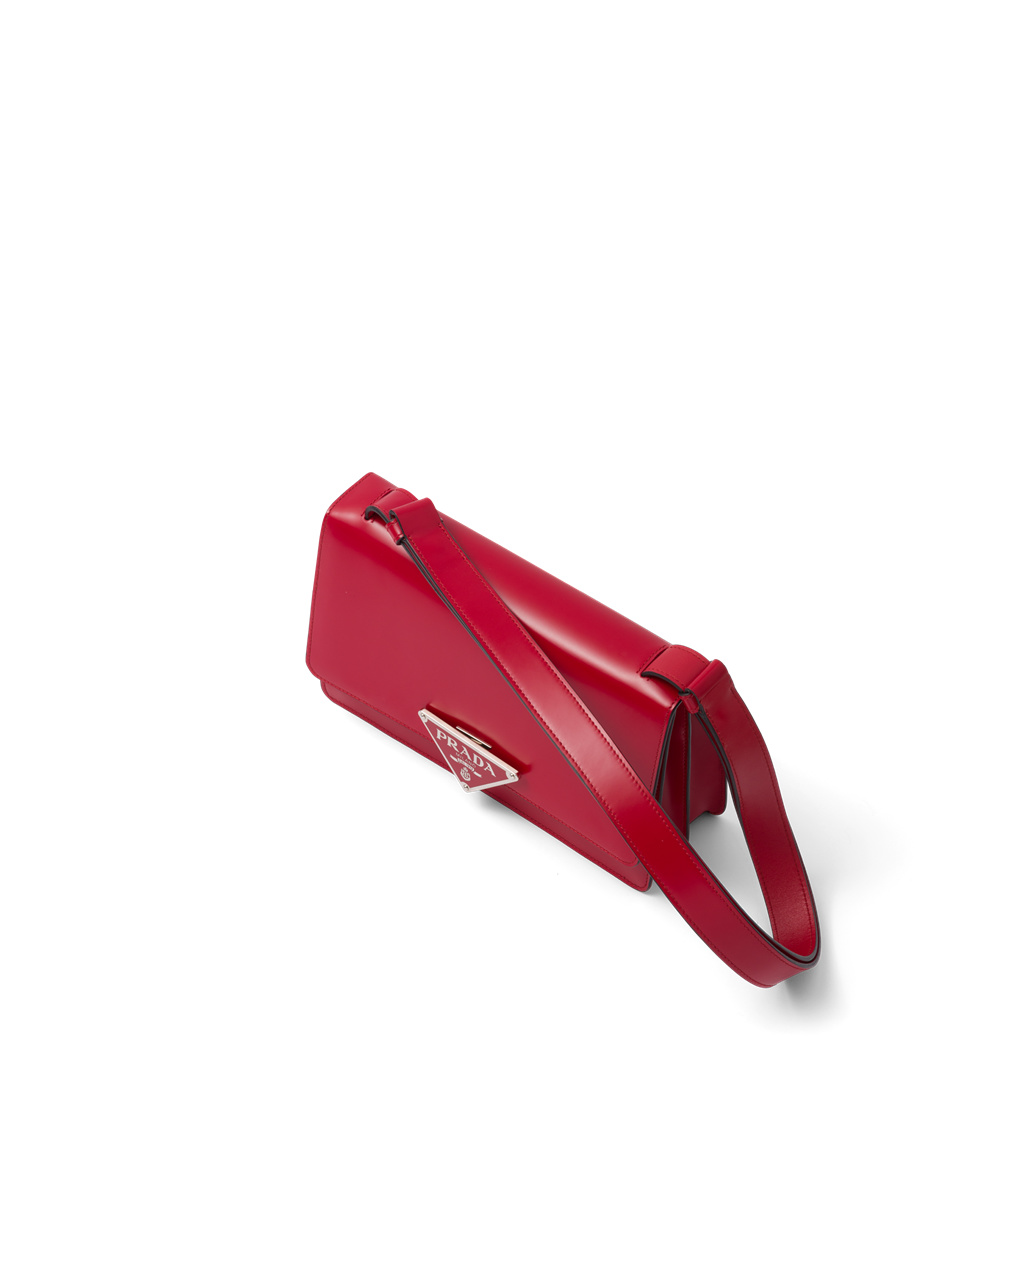 Prada Brushed Leather Shoulder Bag - Red